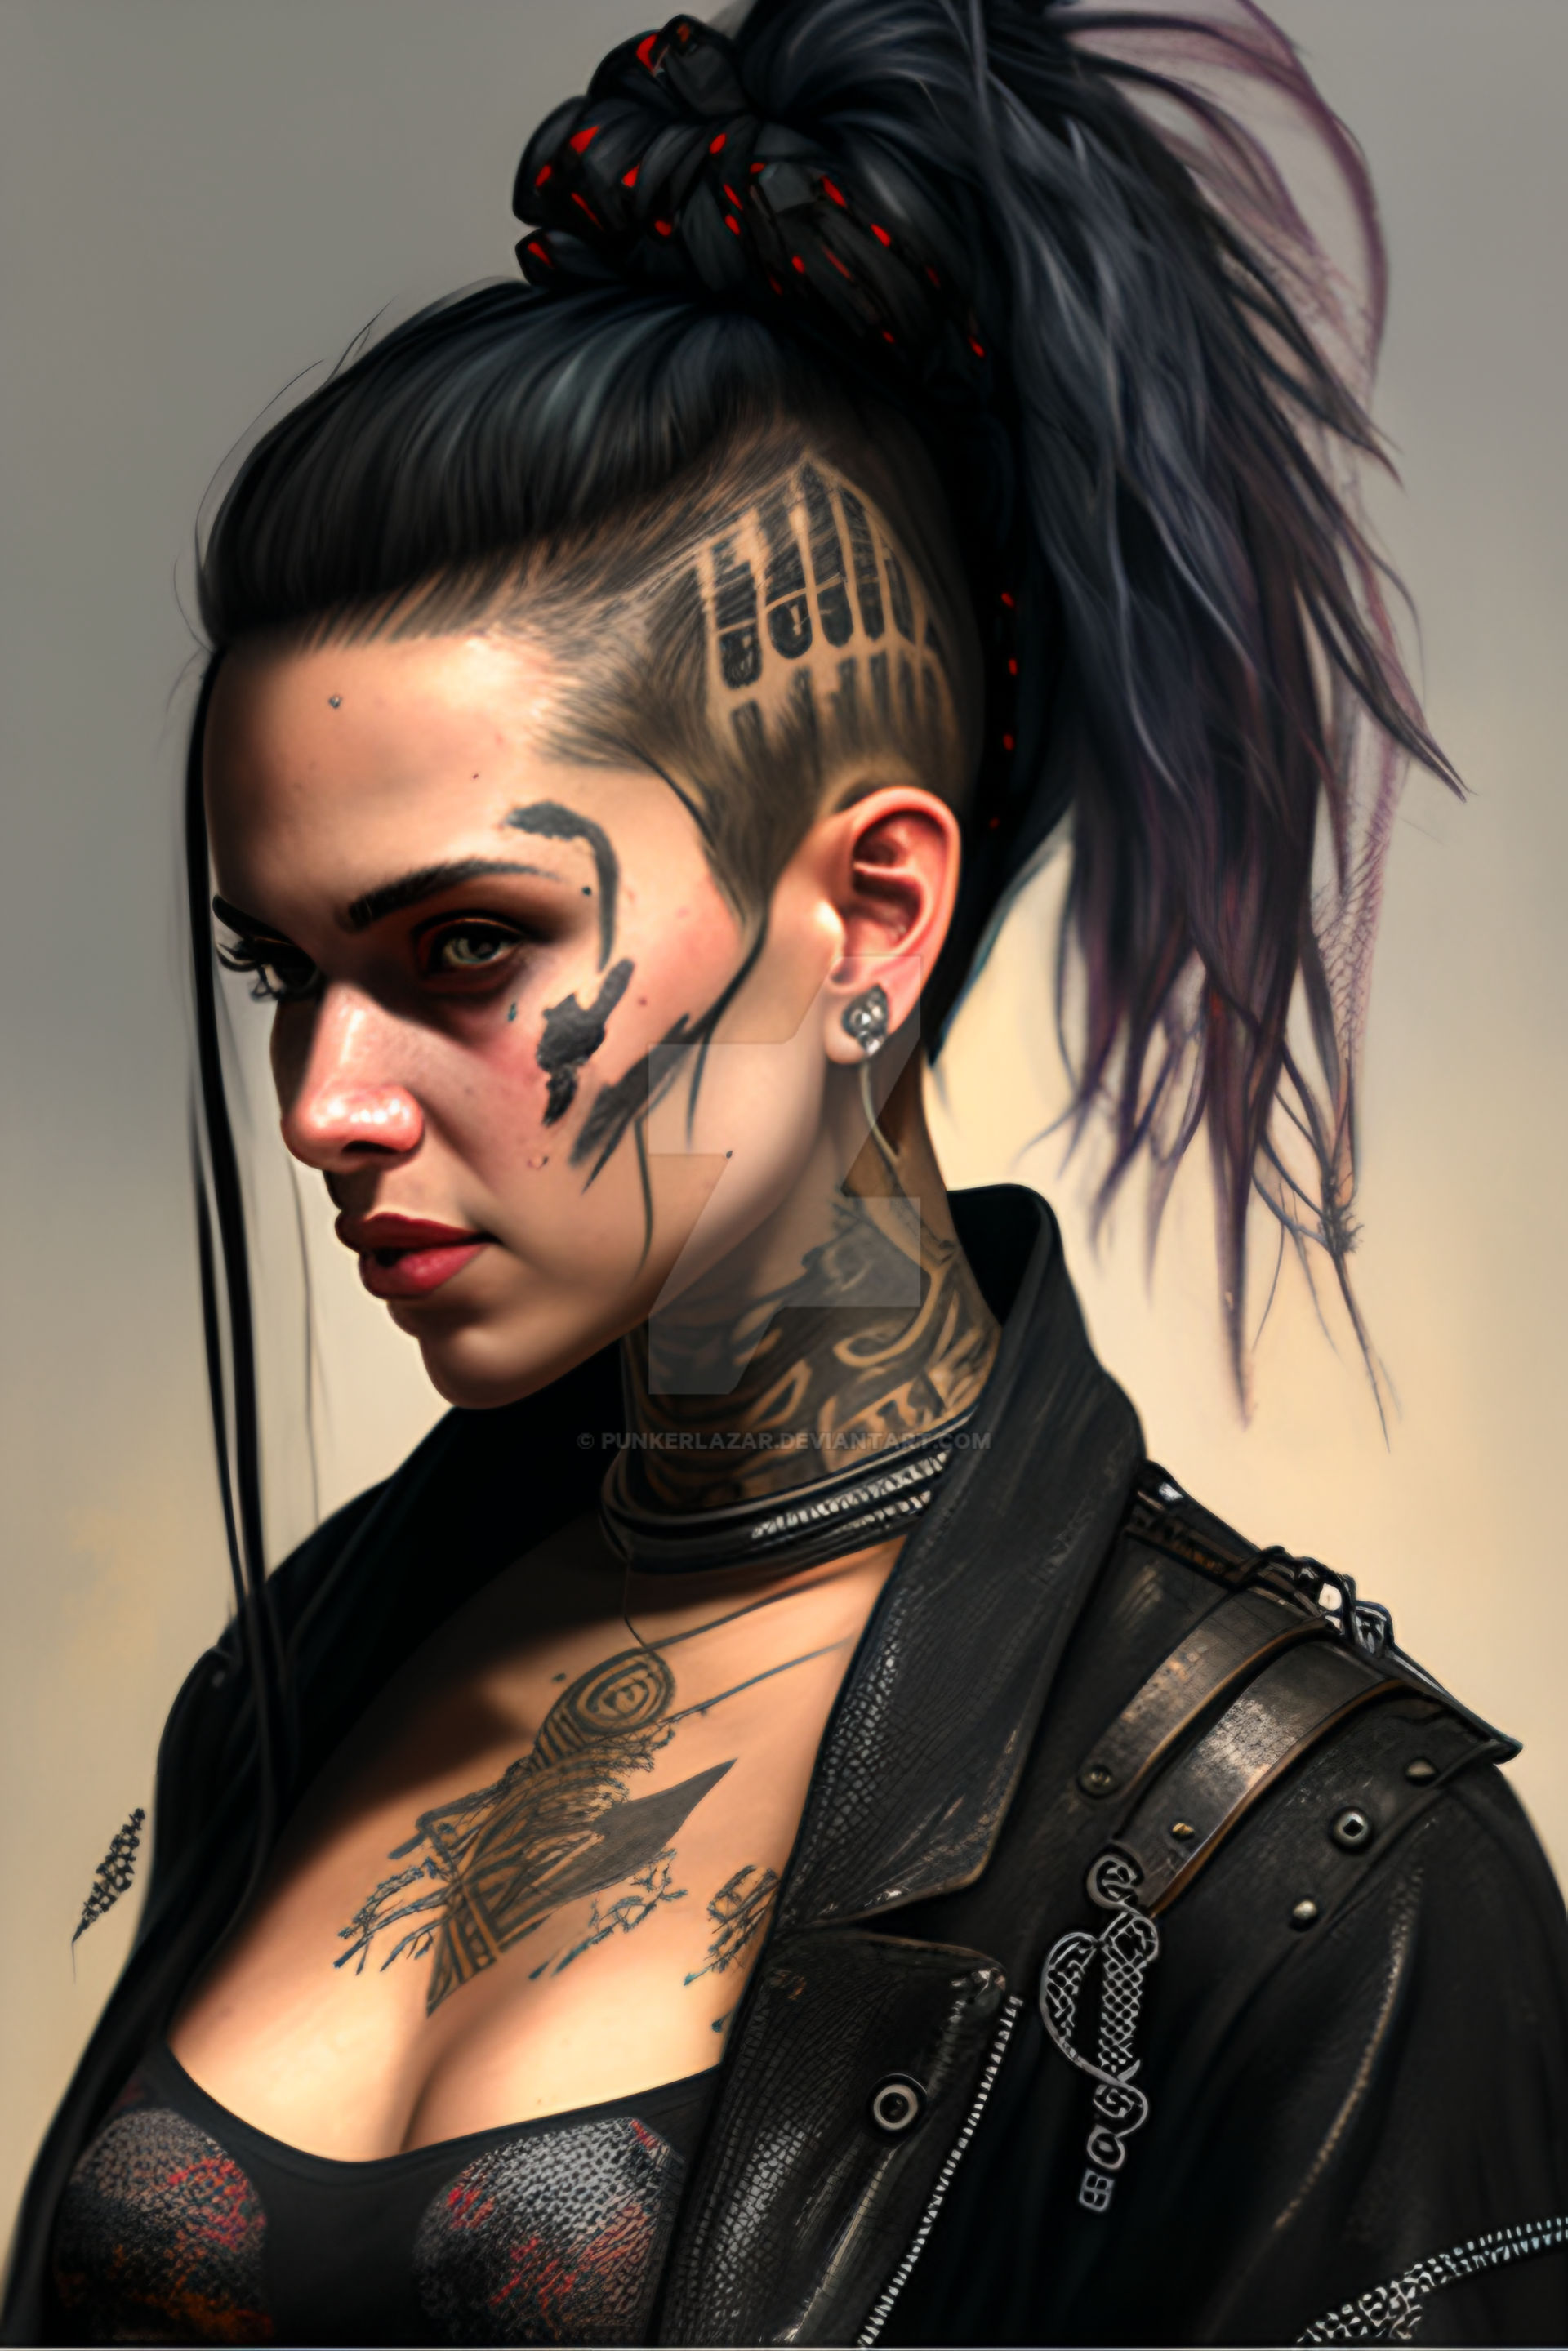 Goth Punk girl (3) by PunkerLazar on DeviantArt